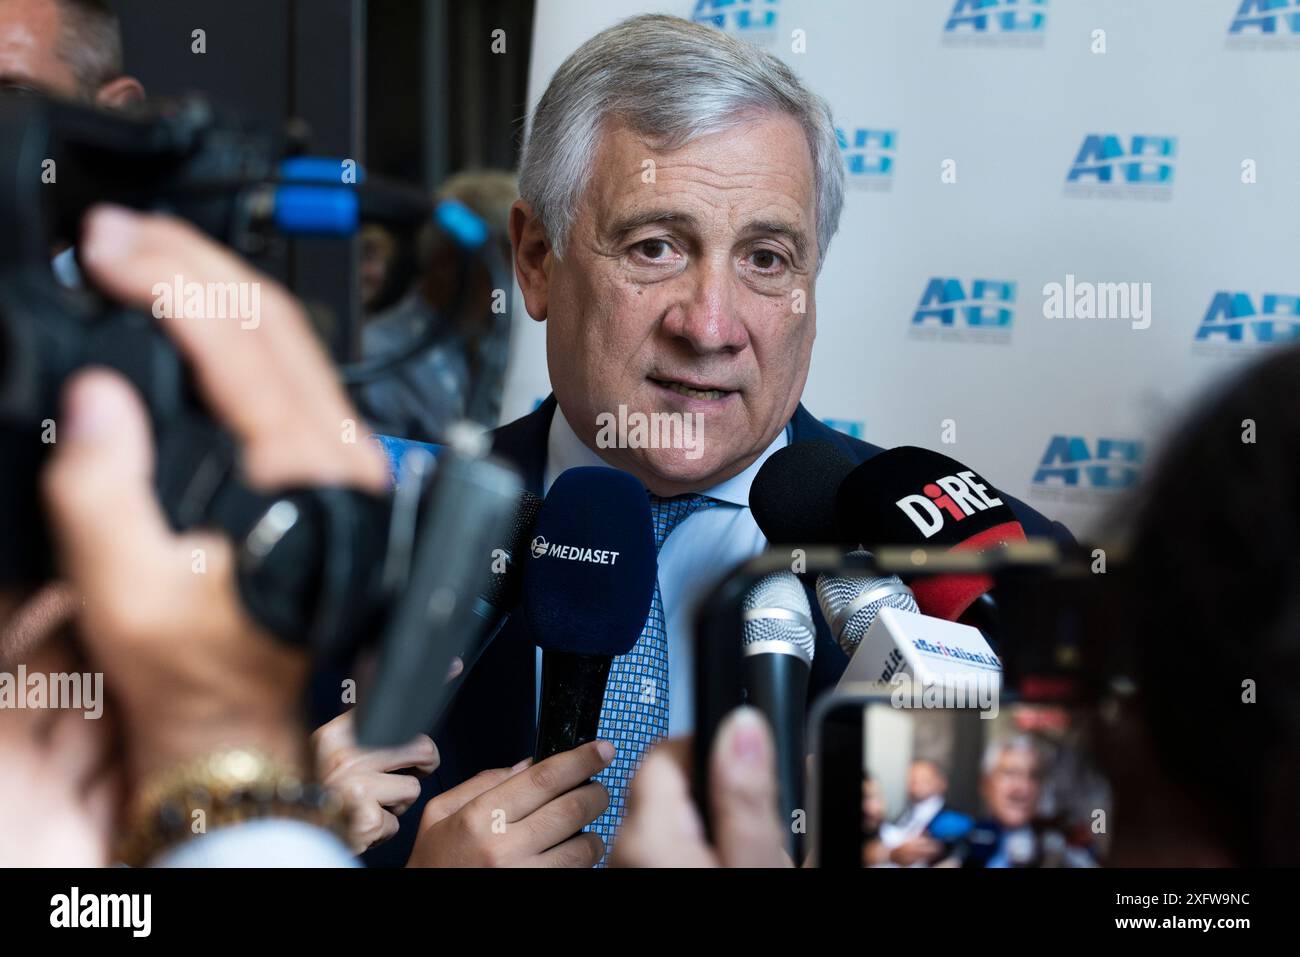 Rom, Italien. Im Foto Antonio Tajani (Minister für auswärtige Angelegenheiten und internationale Zusammenarbeit). NUR REDAKTIONELLE VERWENDUNG! NICHT FÜR KOMMERZIELLE ZWECKE! Stockfoto